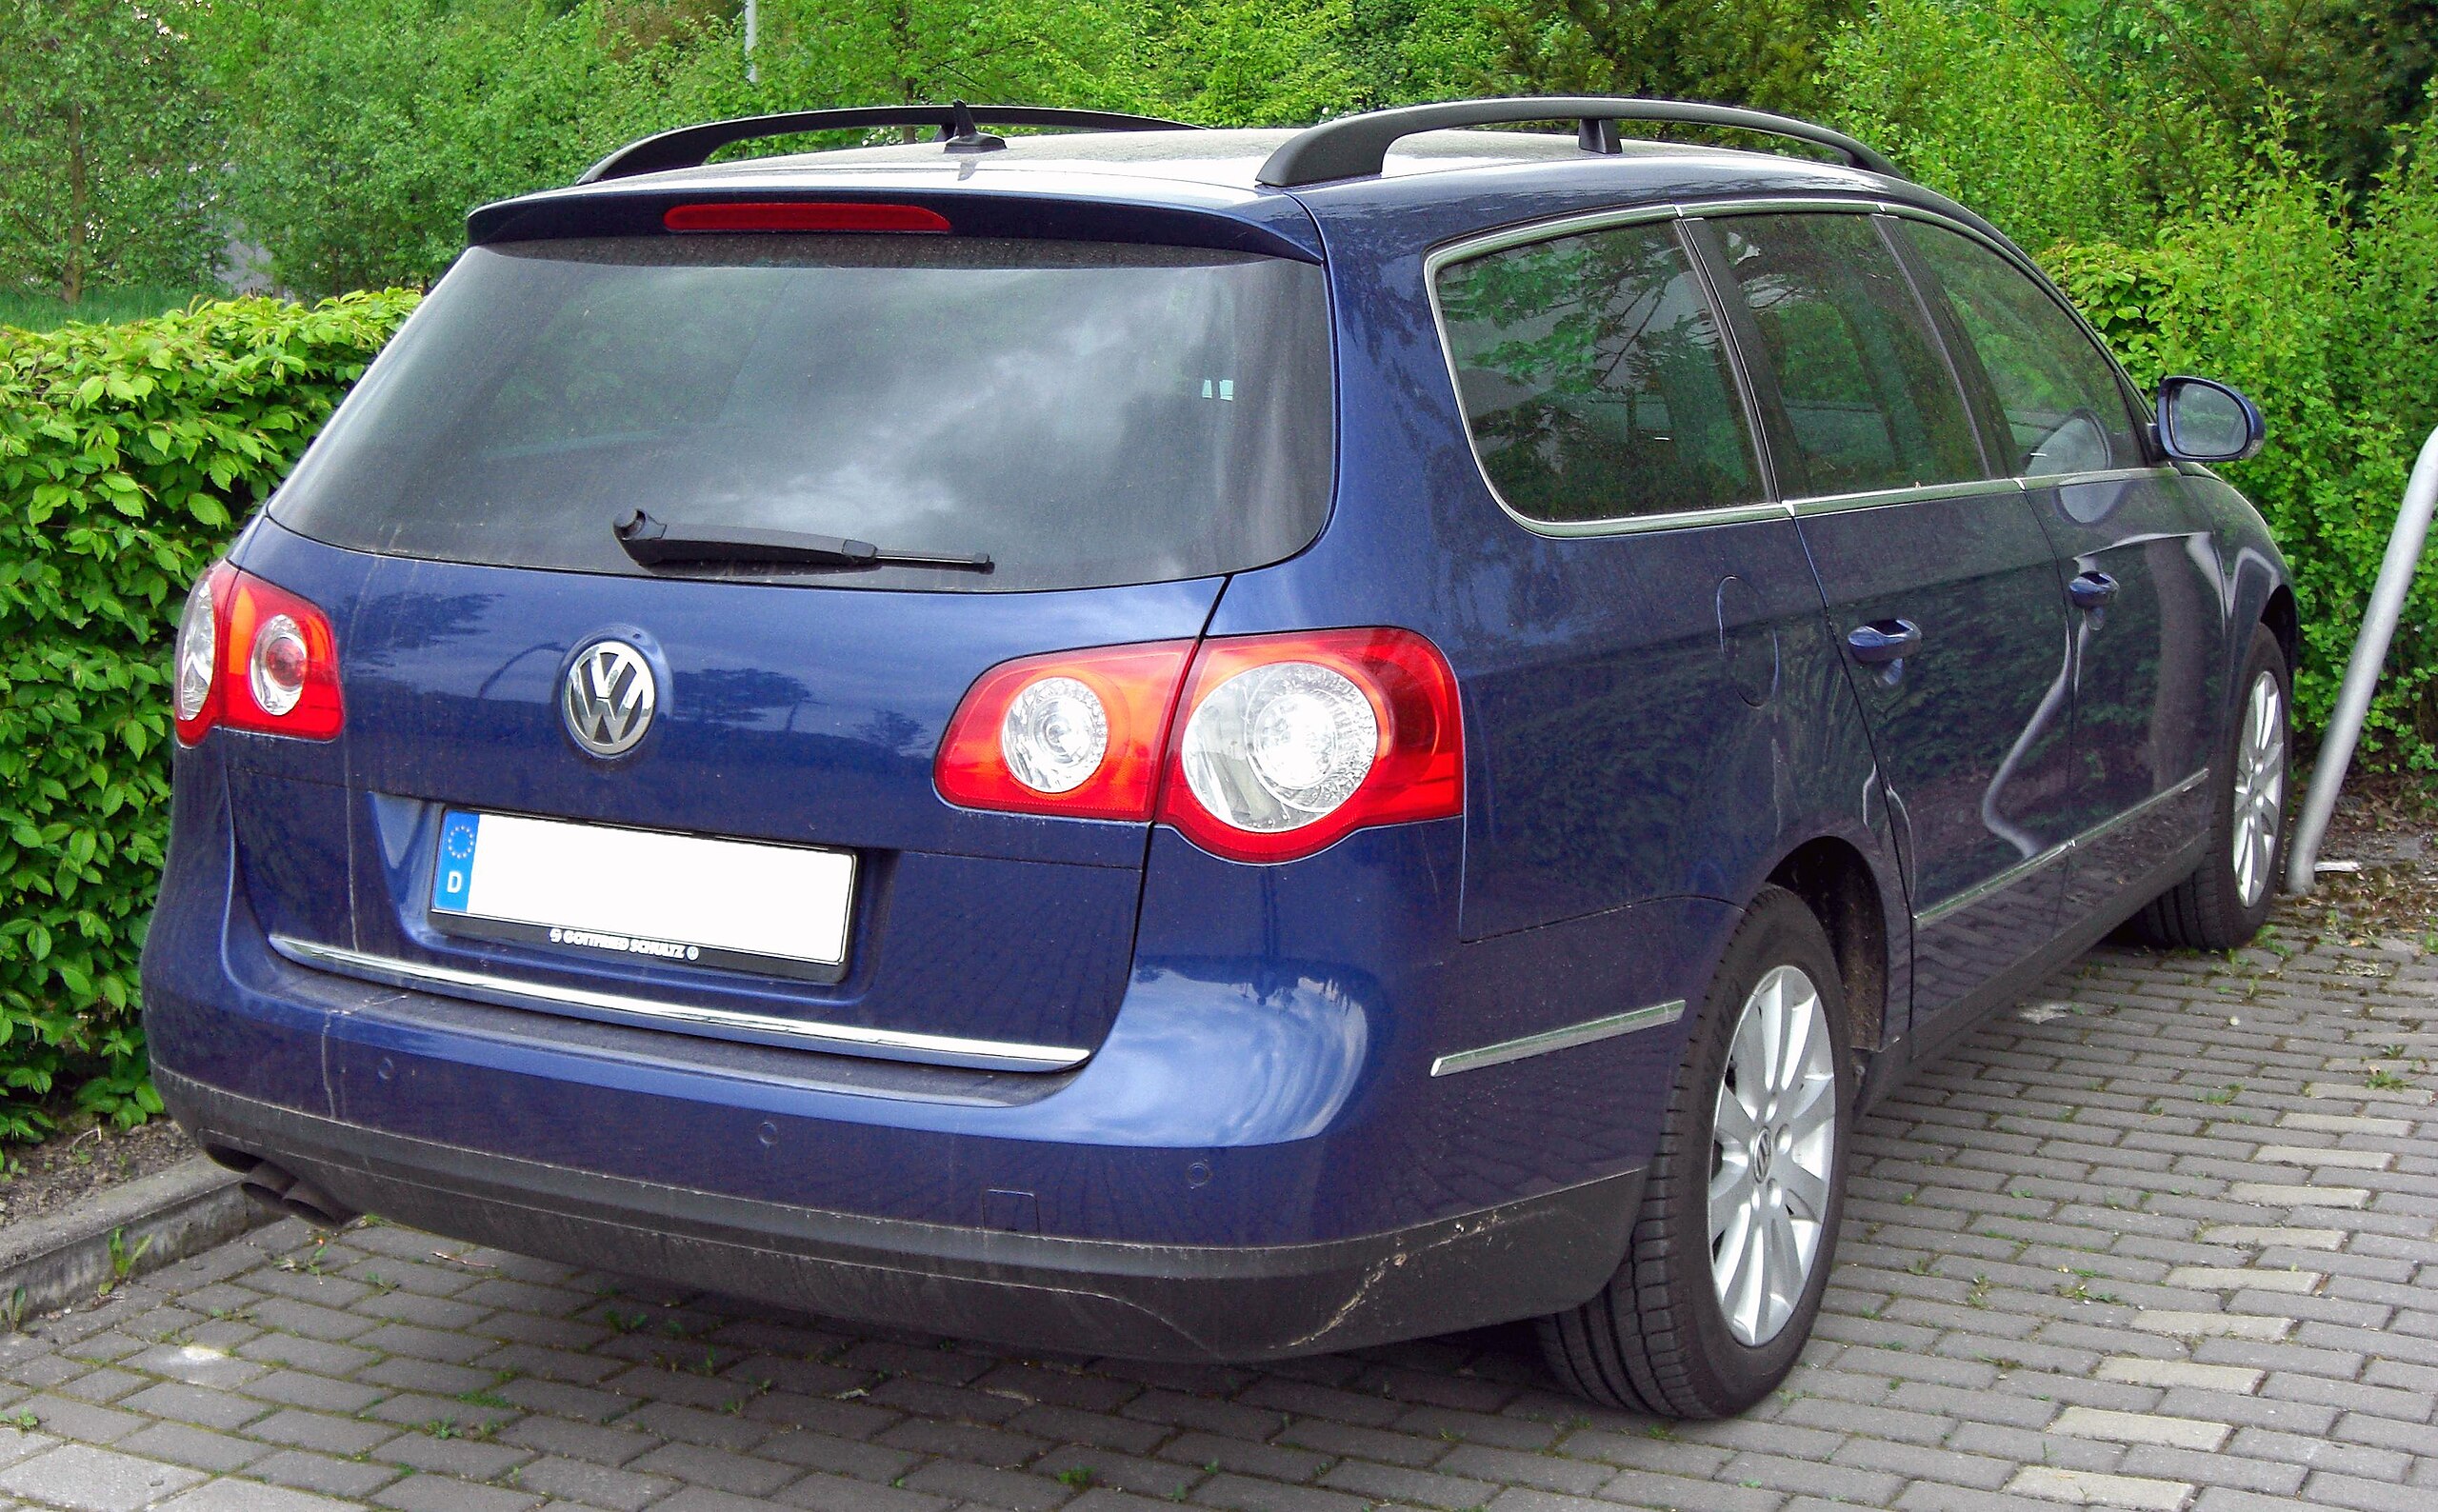 File:VW Passat B6 Variant 20090329 front.jpg - Wikimedia Commons